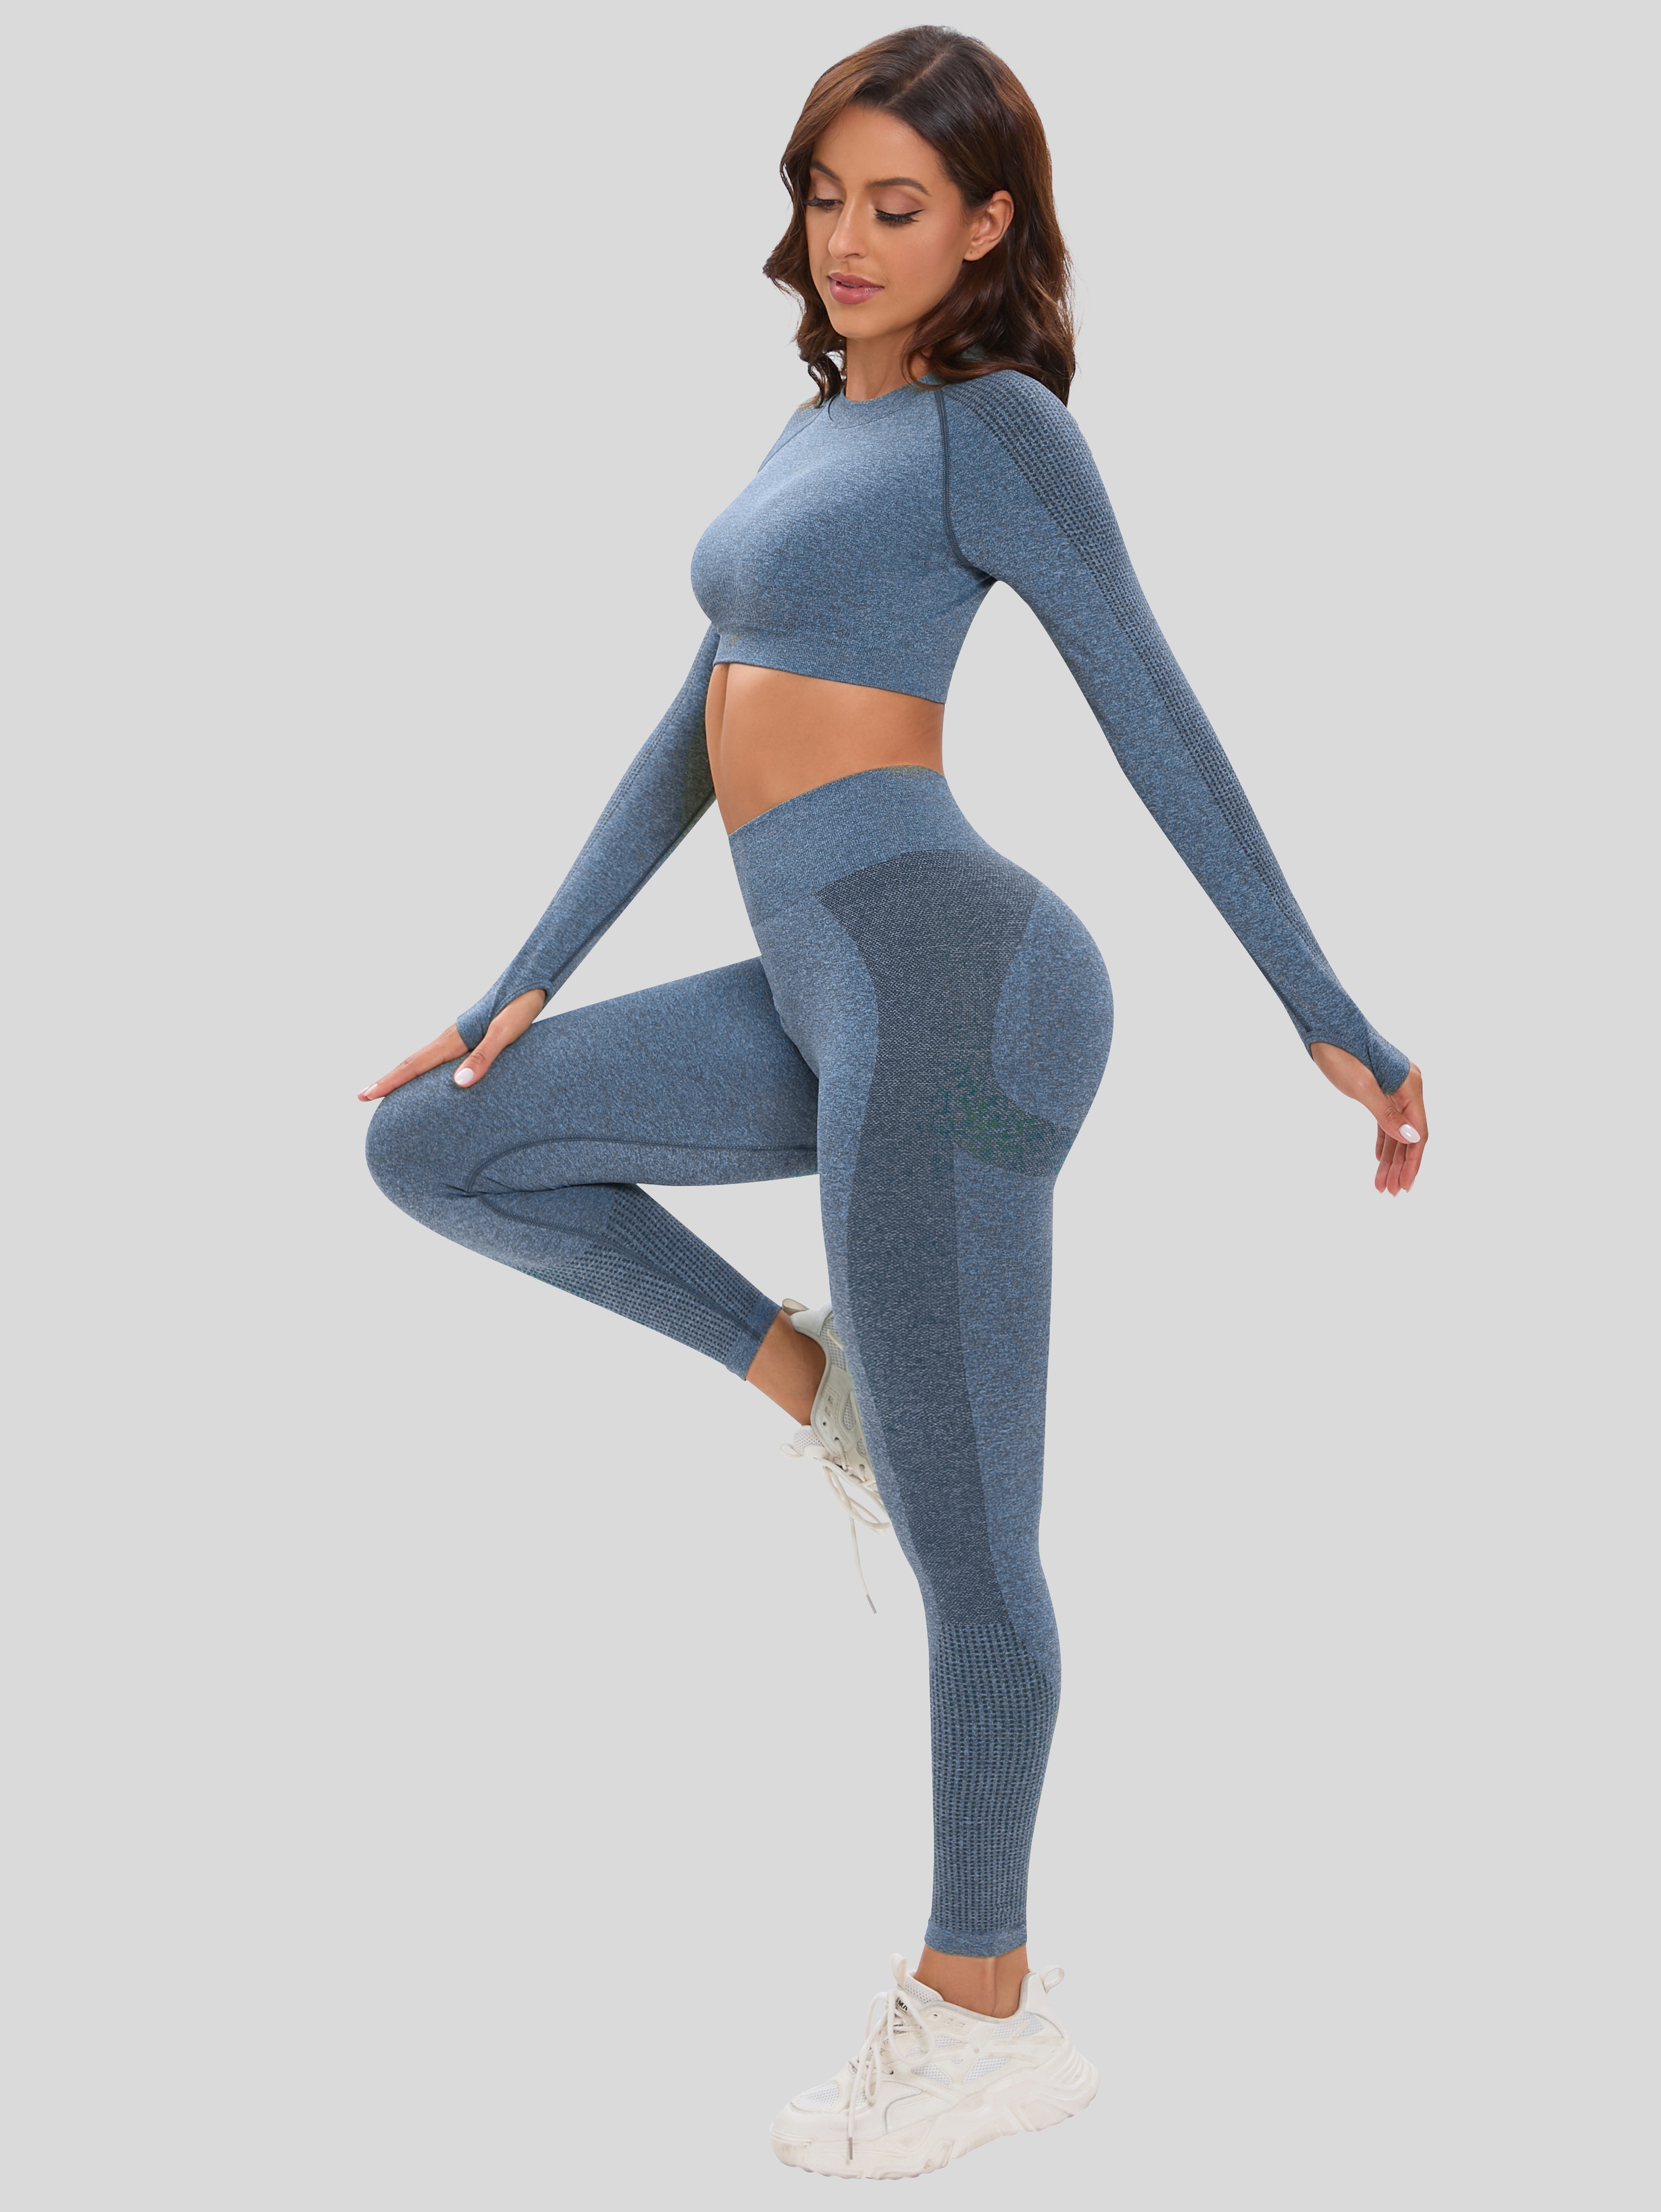 Sportswear Women Set Seamless Yoga Set Workout Clothes Women Long